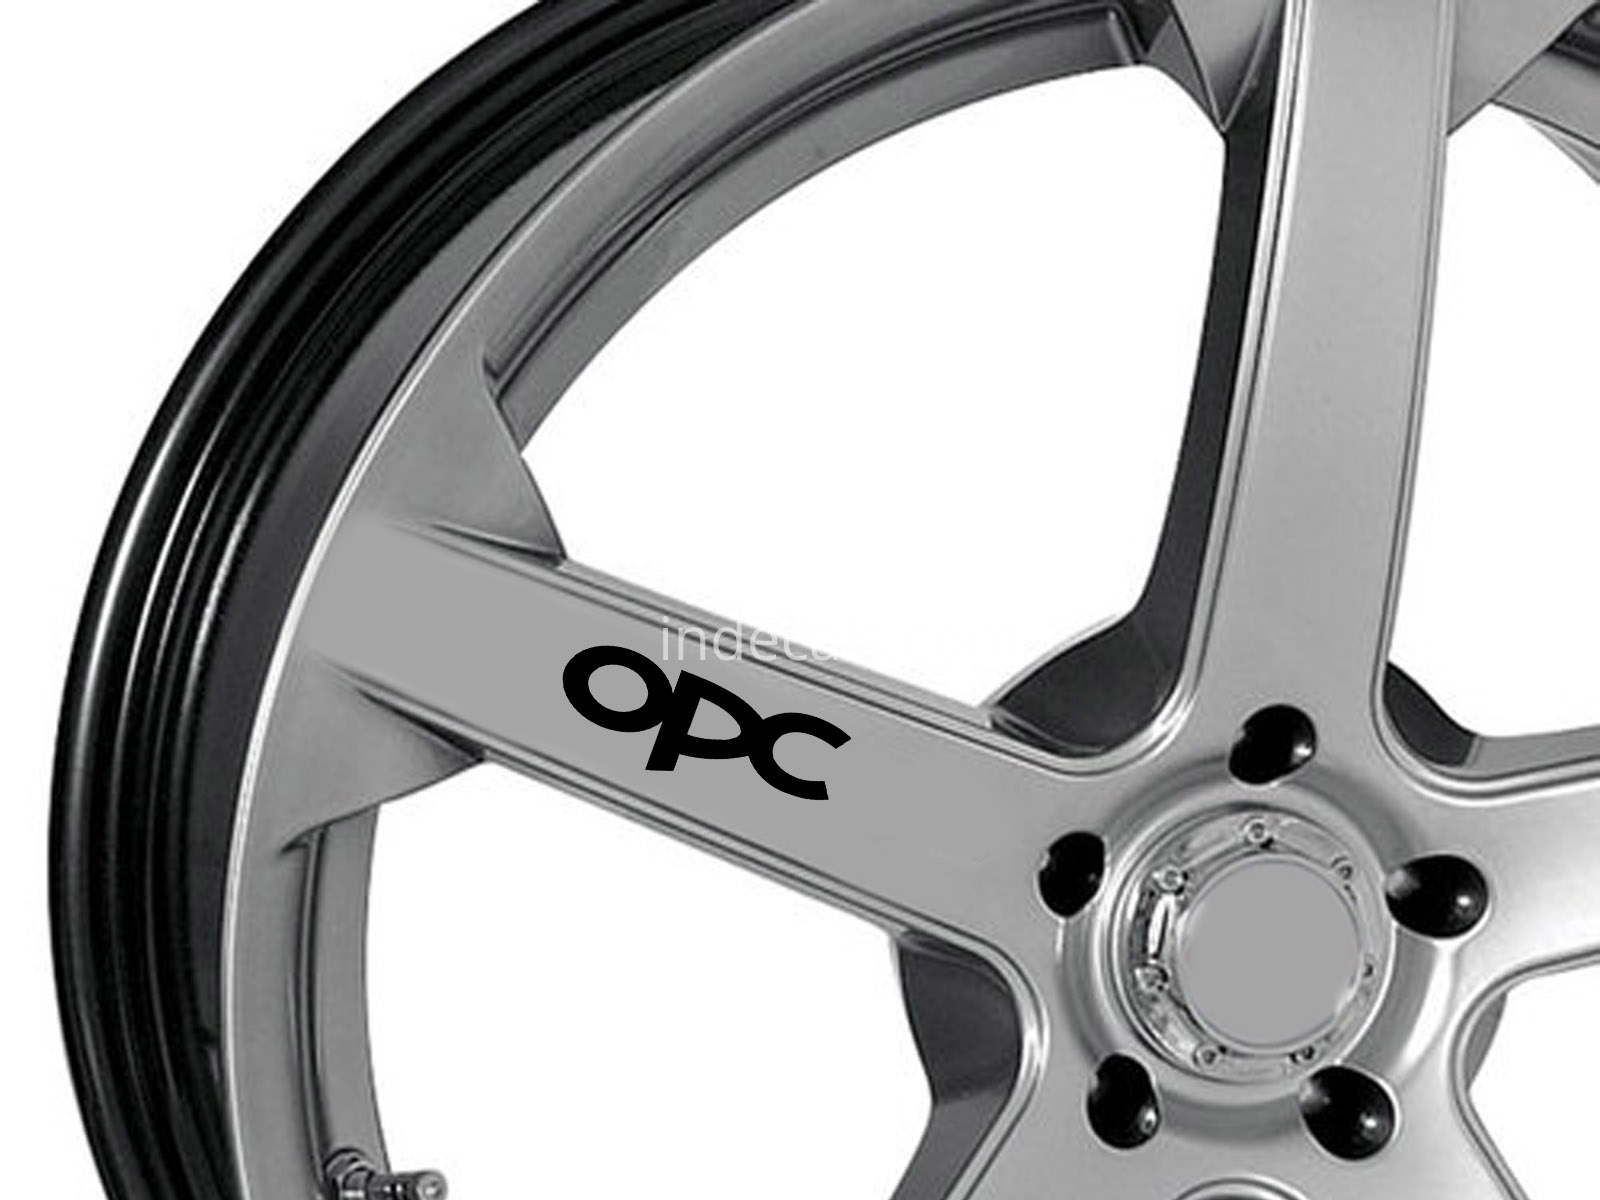 6 x Opel OPC Stickers for Wheels - Black